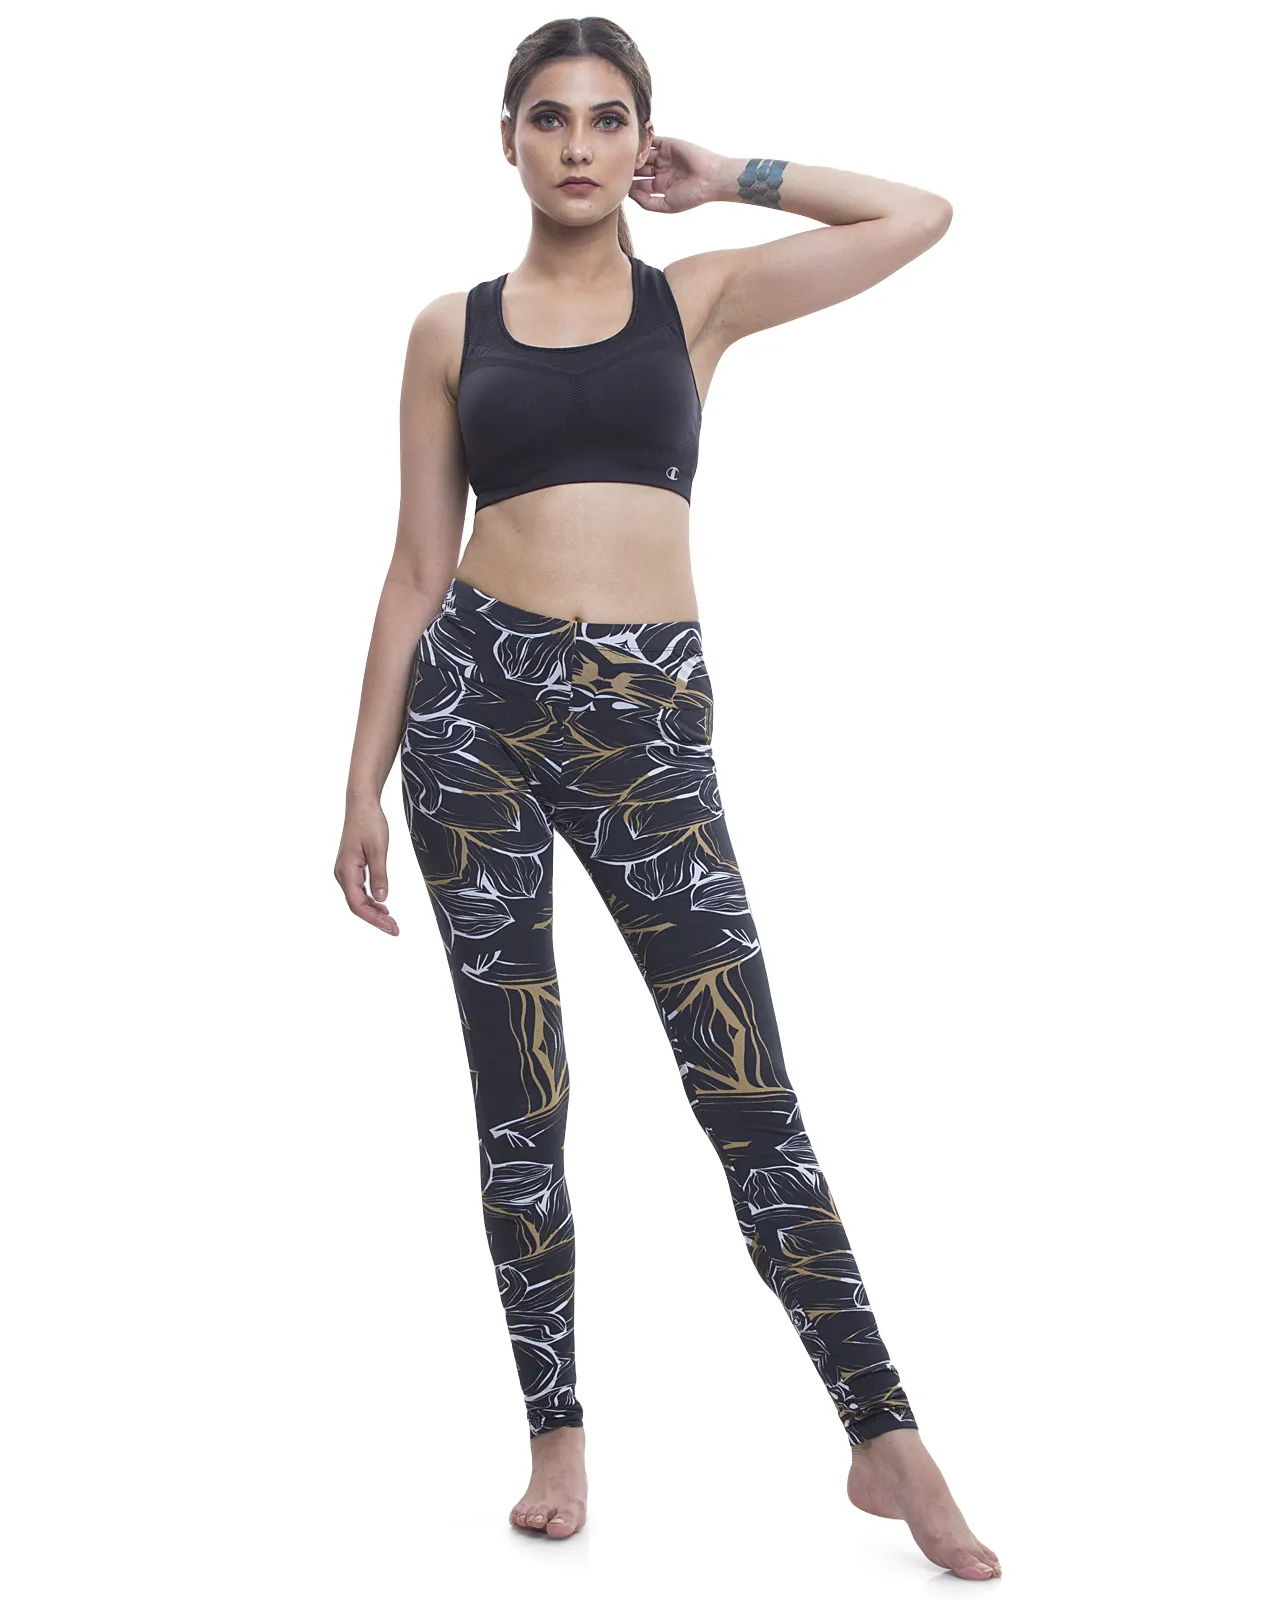 Bela Trendy Melhor Qualidade Yoga Full Print Leggings com bolsos laterais em tecido de malha de algodão orgânico para mulheres e meninas